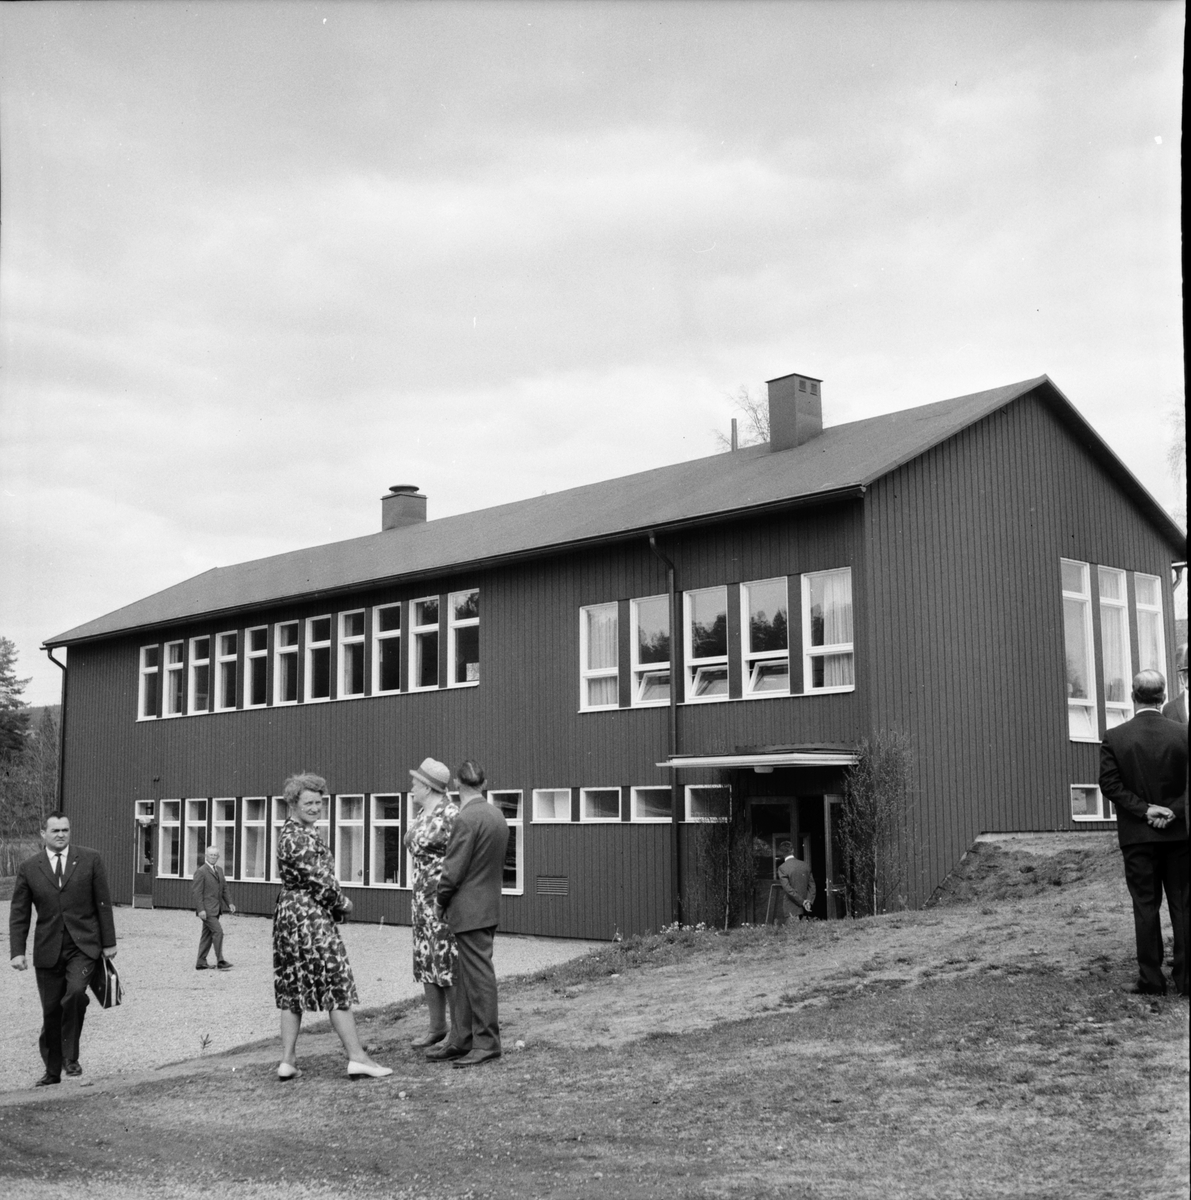 Svabensverk,
Invigning av bygdegården,
26 Maj 1965